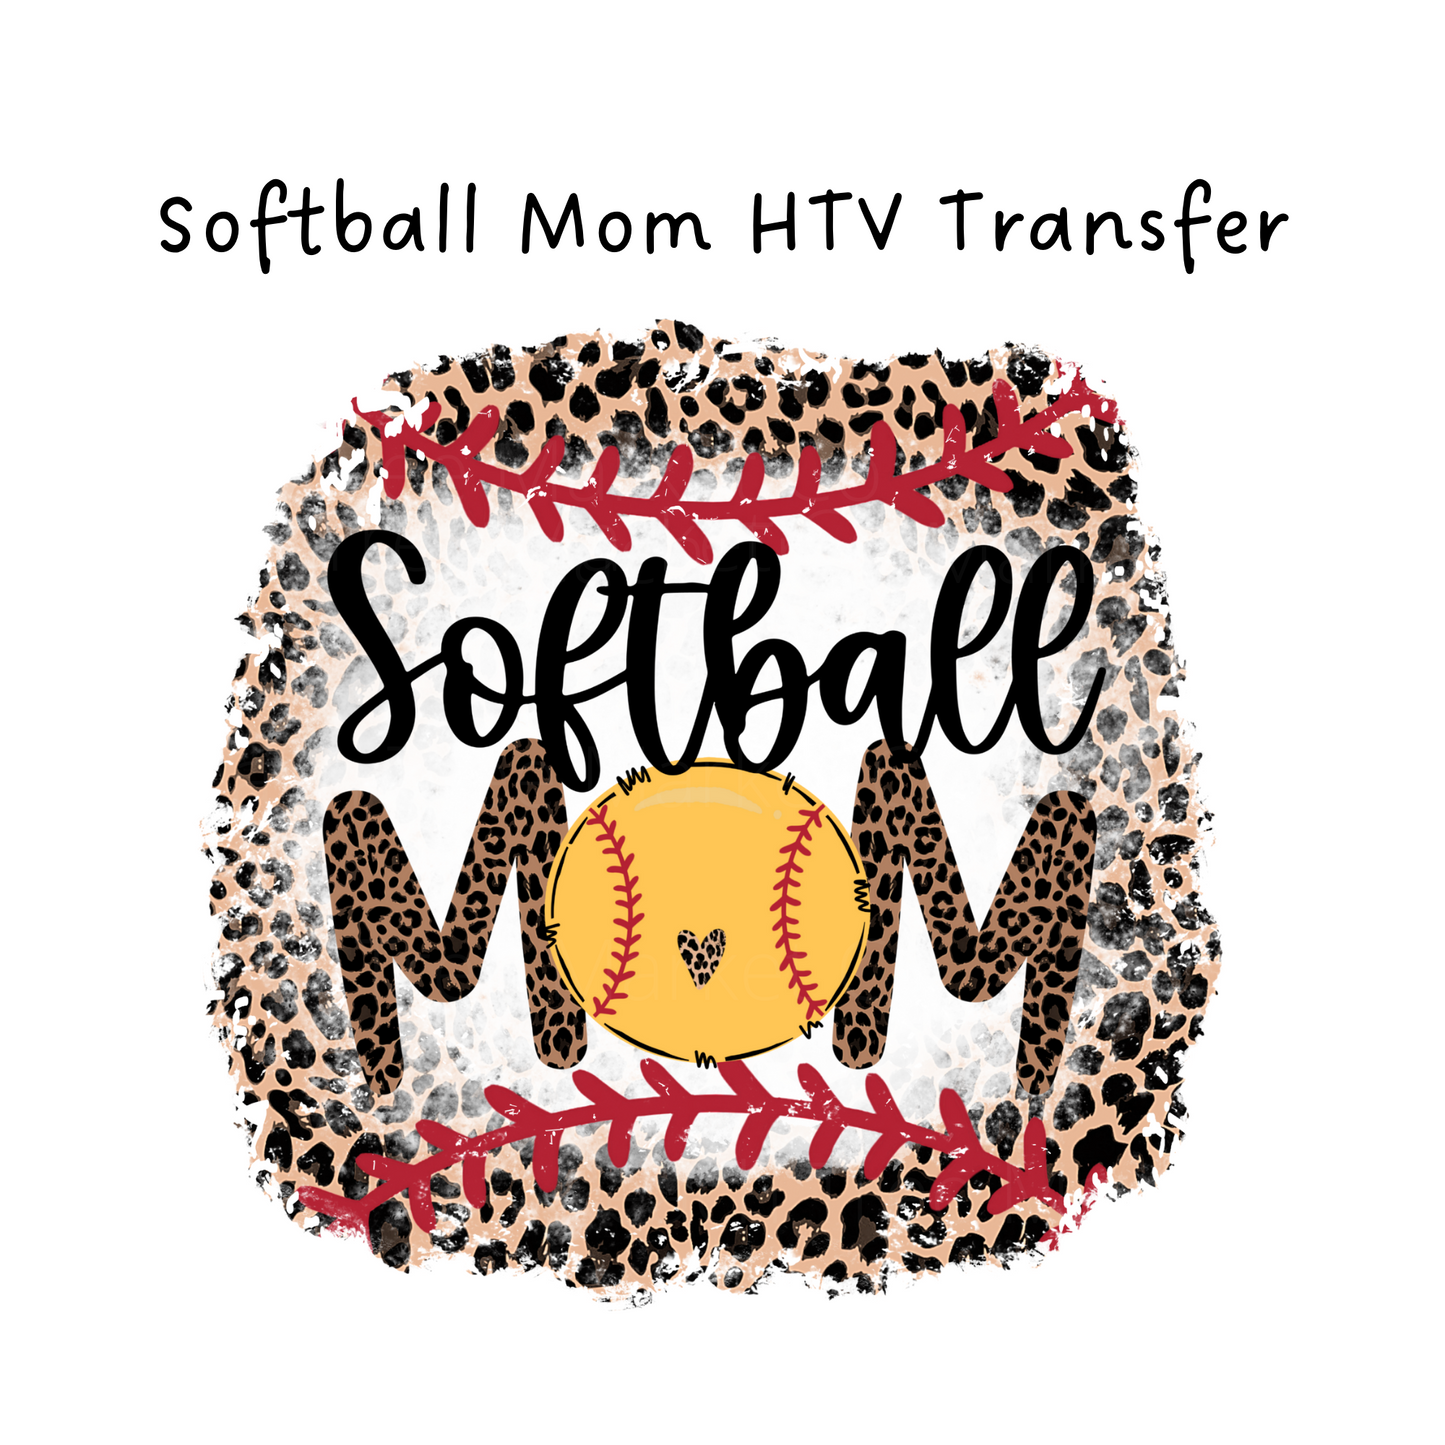 Softball Mom HTV Transfer